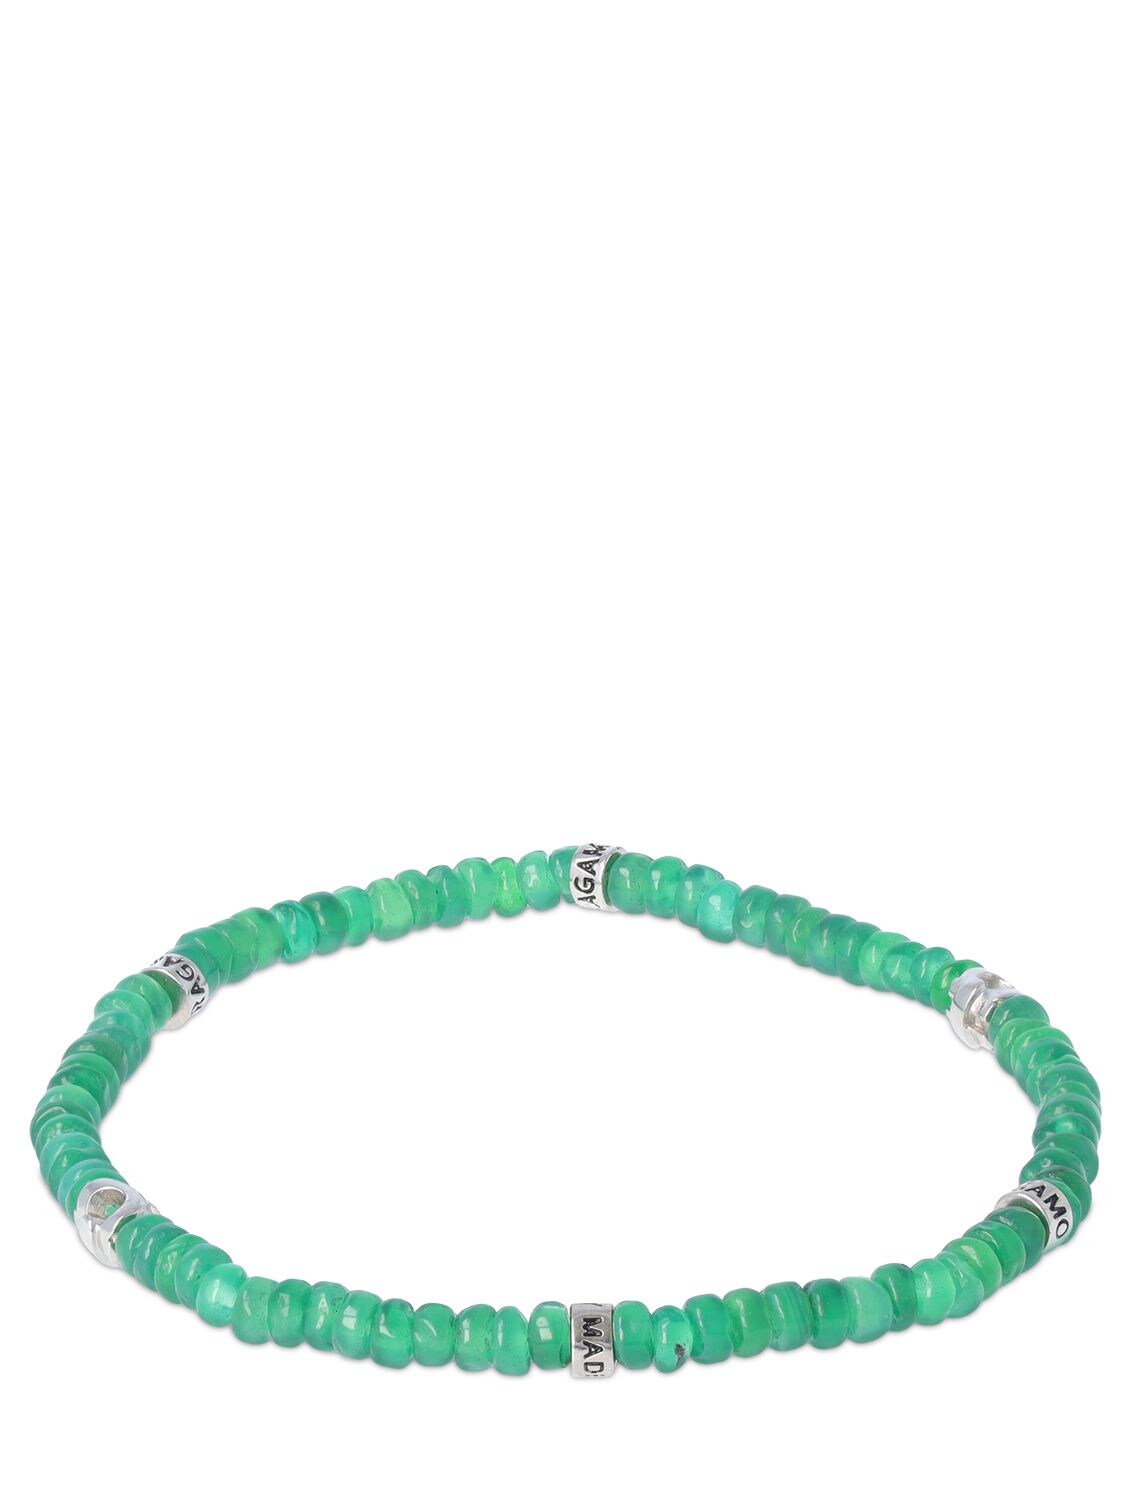 Bracelet Moyen En Perles D'agate Vertes